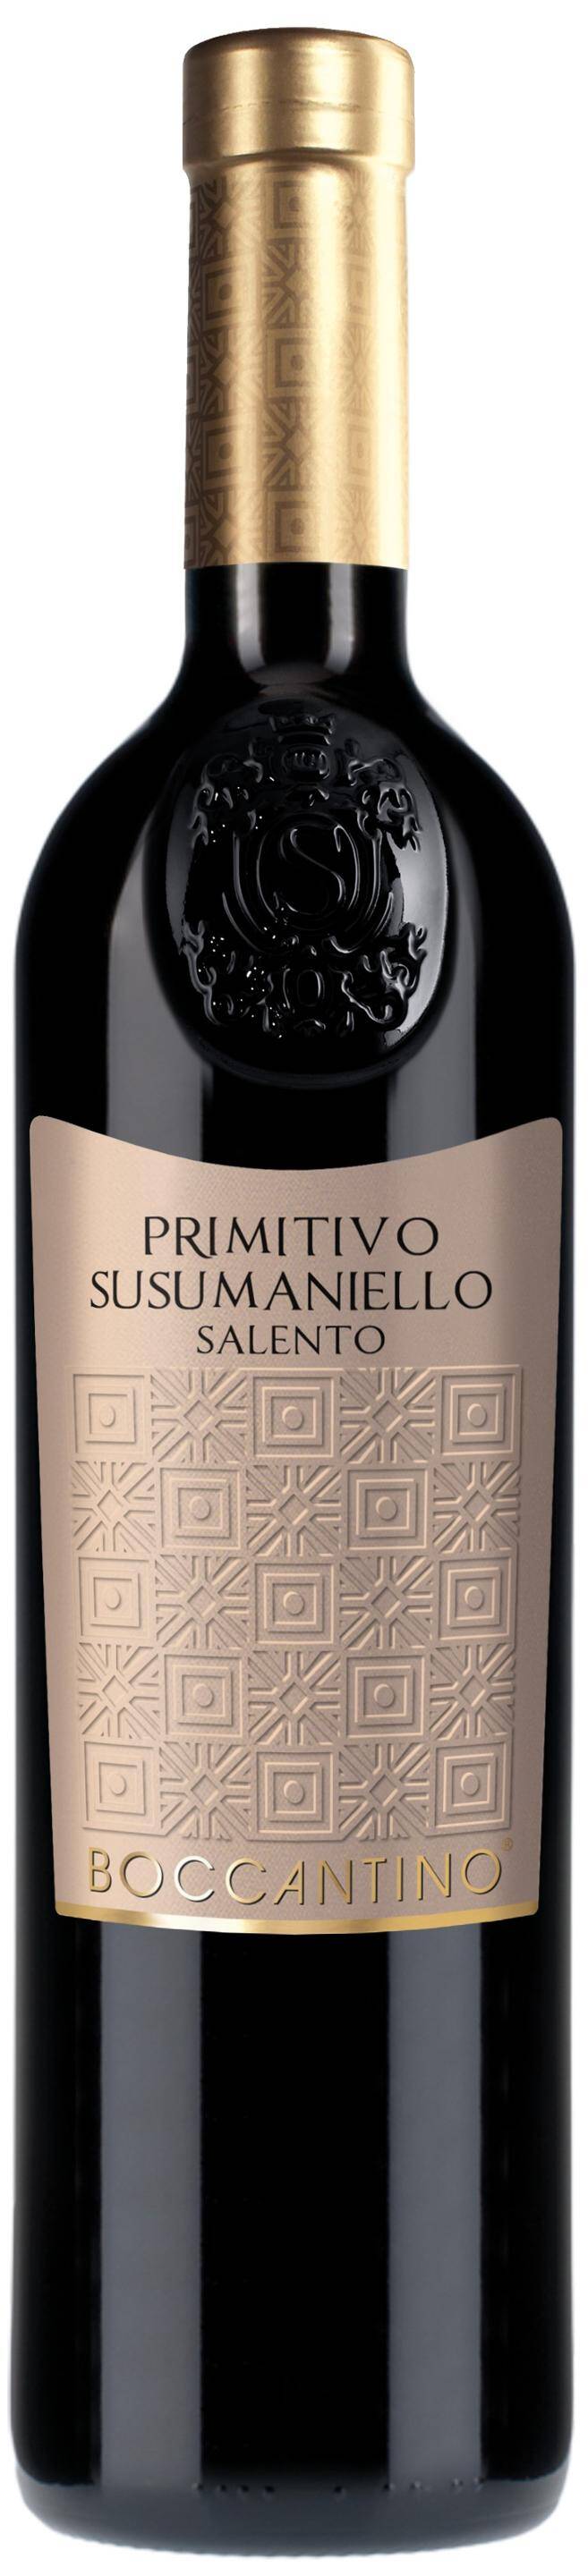 Wino włoskie SCH Boccantino Primitivo & Susumaniello Salento IGT 14,5% CPW 750ml/6